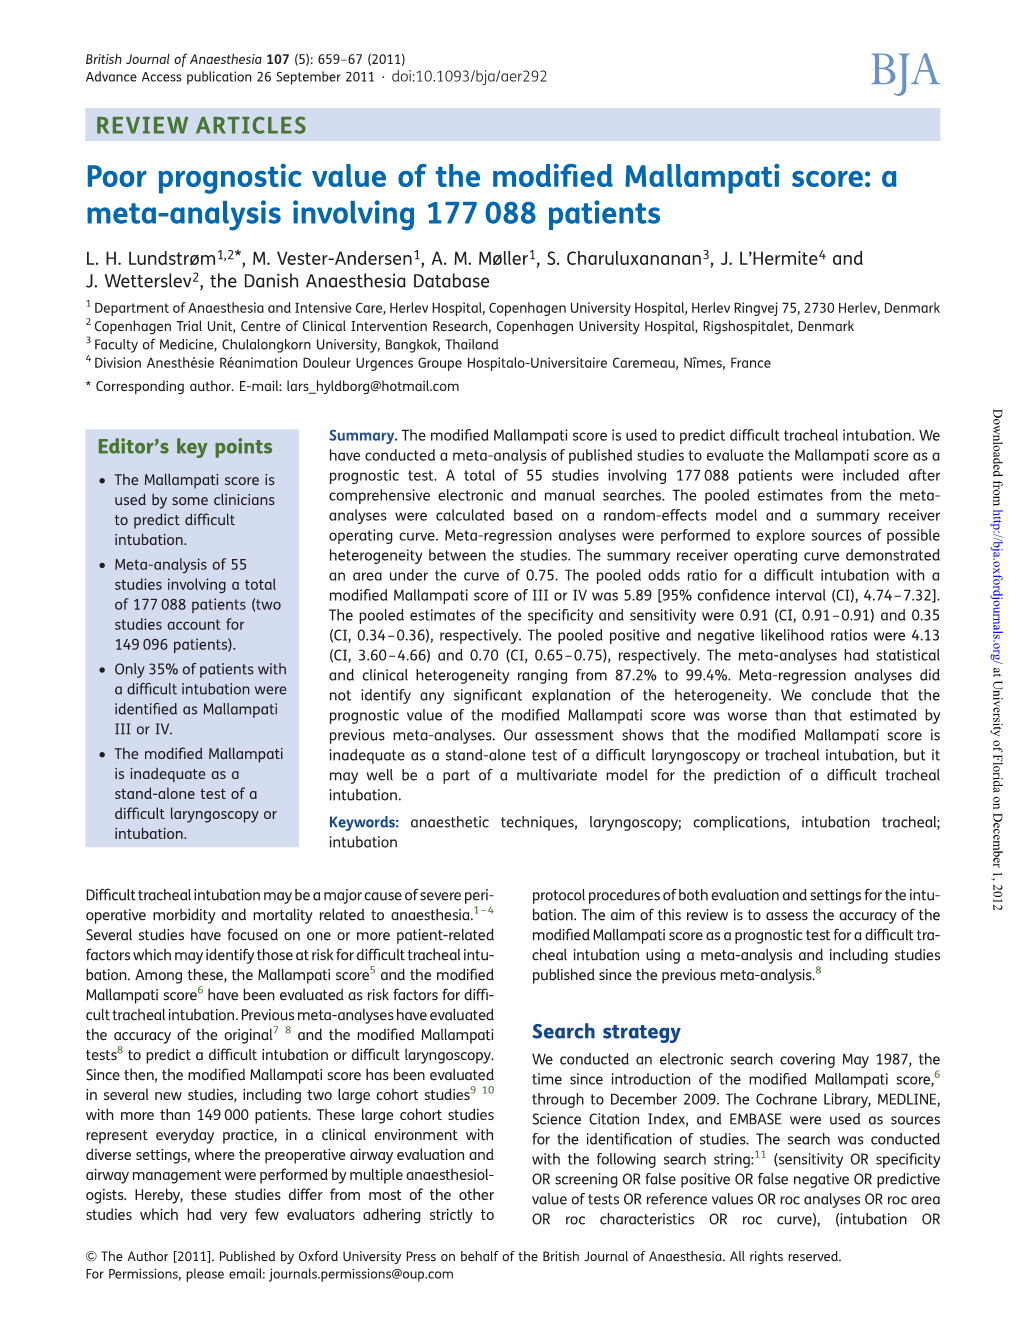 Poor Prognostic Value of the Modified Mallampati Score